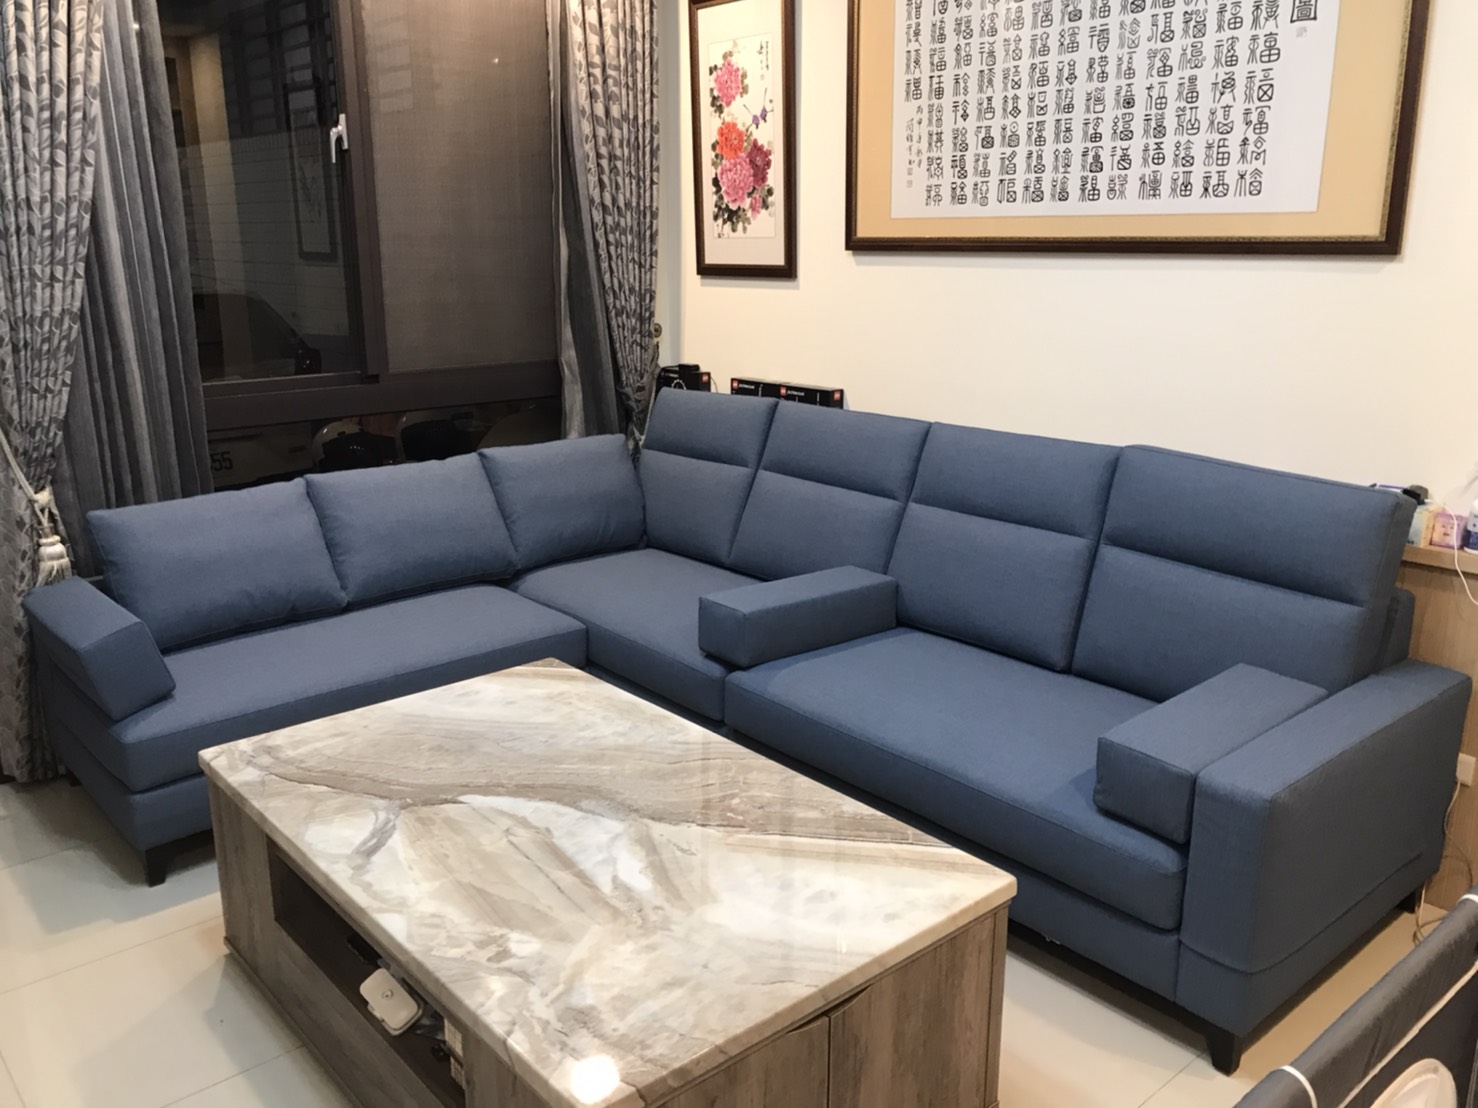 【客戶案例分享】高雄林先生Ｌ型沙發訂製